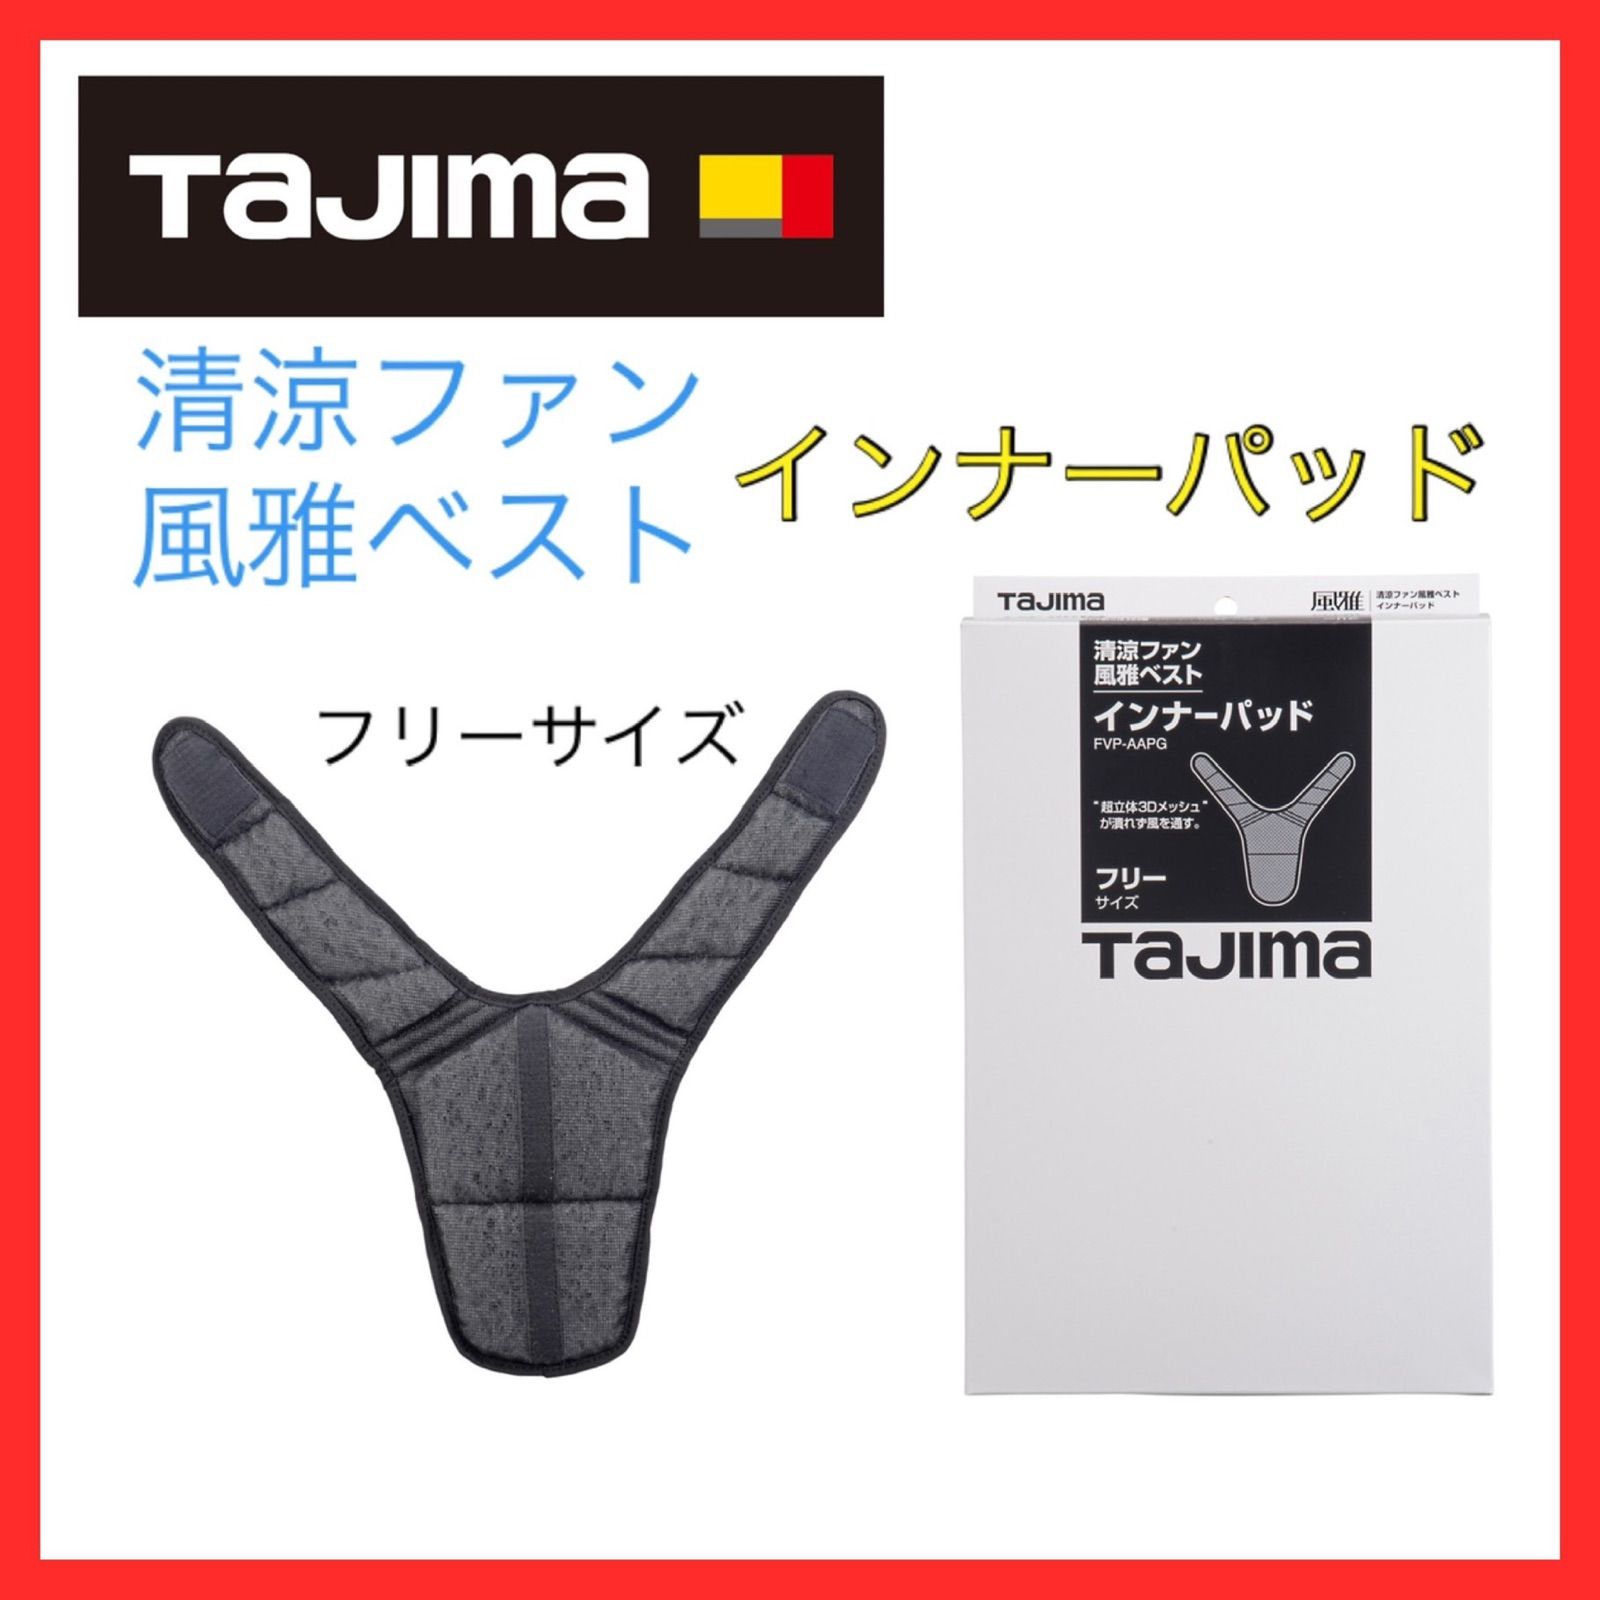 タジマ(Tajima) 清涼ファン 風雅パッド フルセット フリーサイズ ファン付きパッド ハーネス対応 1セット - 3